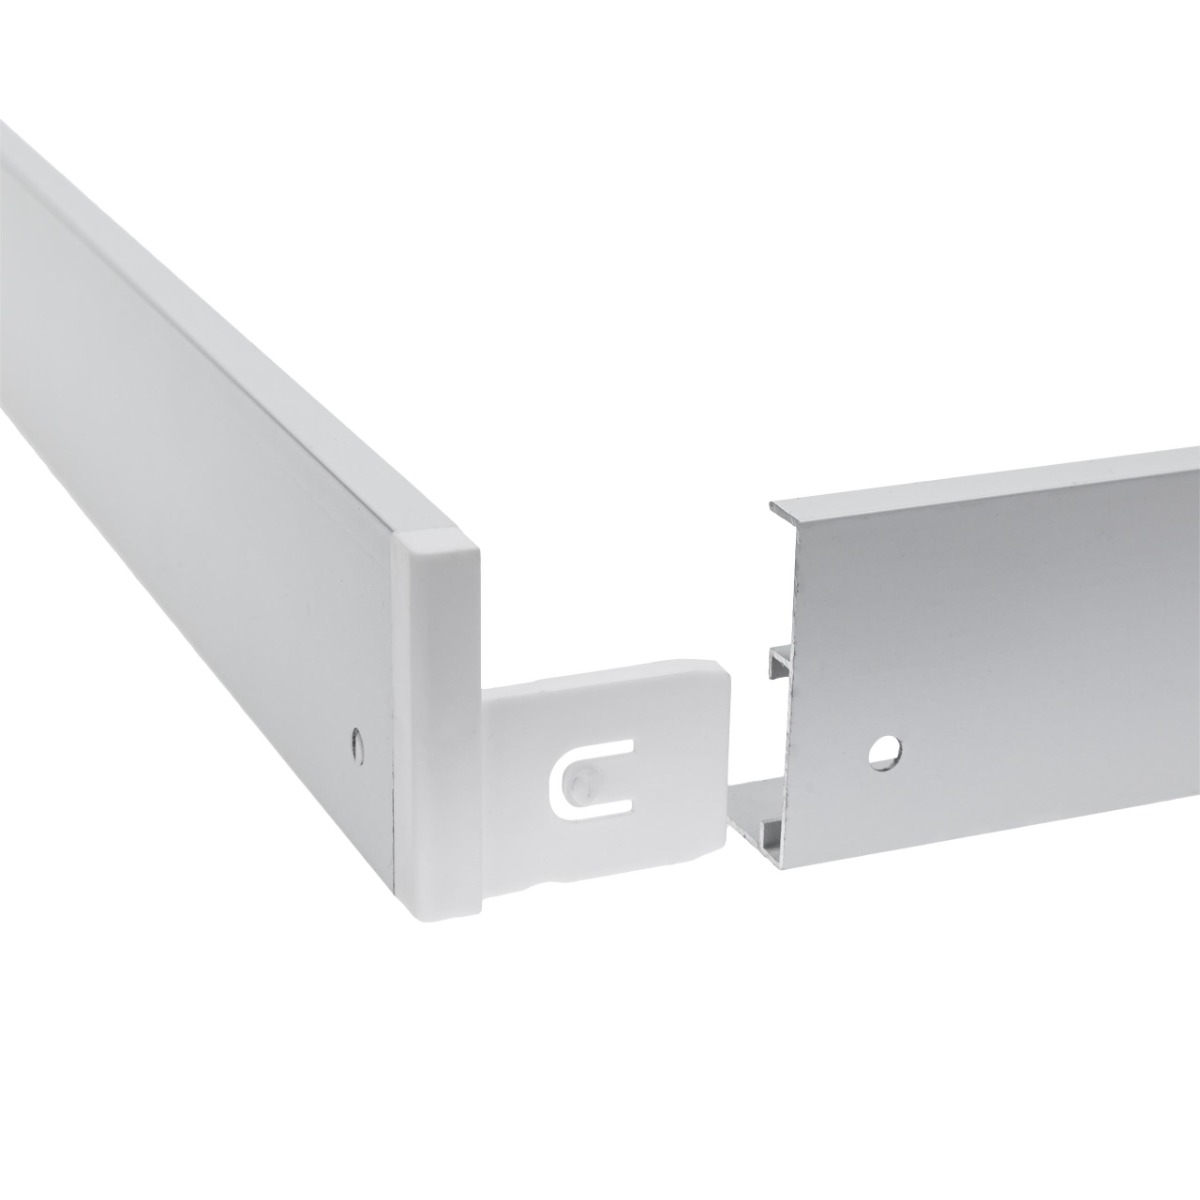 Marco Aluminio Blanco para panel 30x150cm incl. Tornillos 5cm